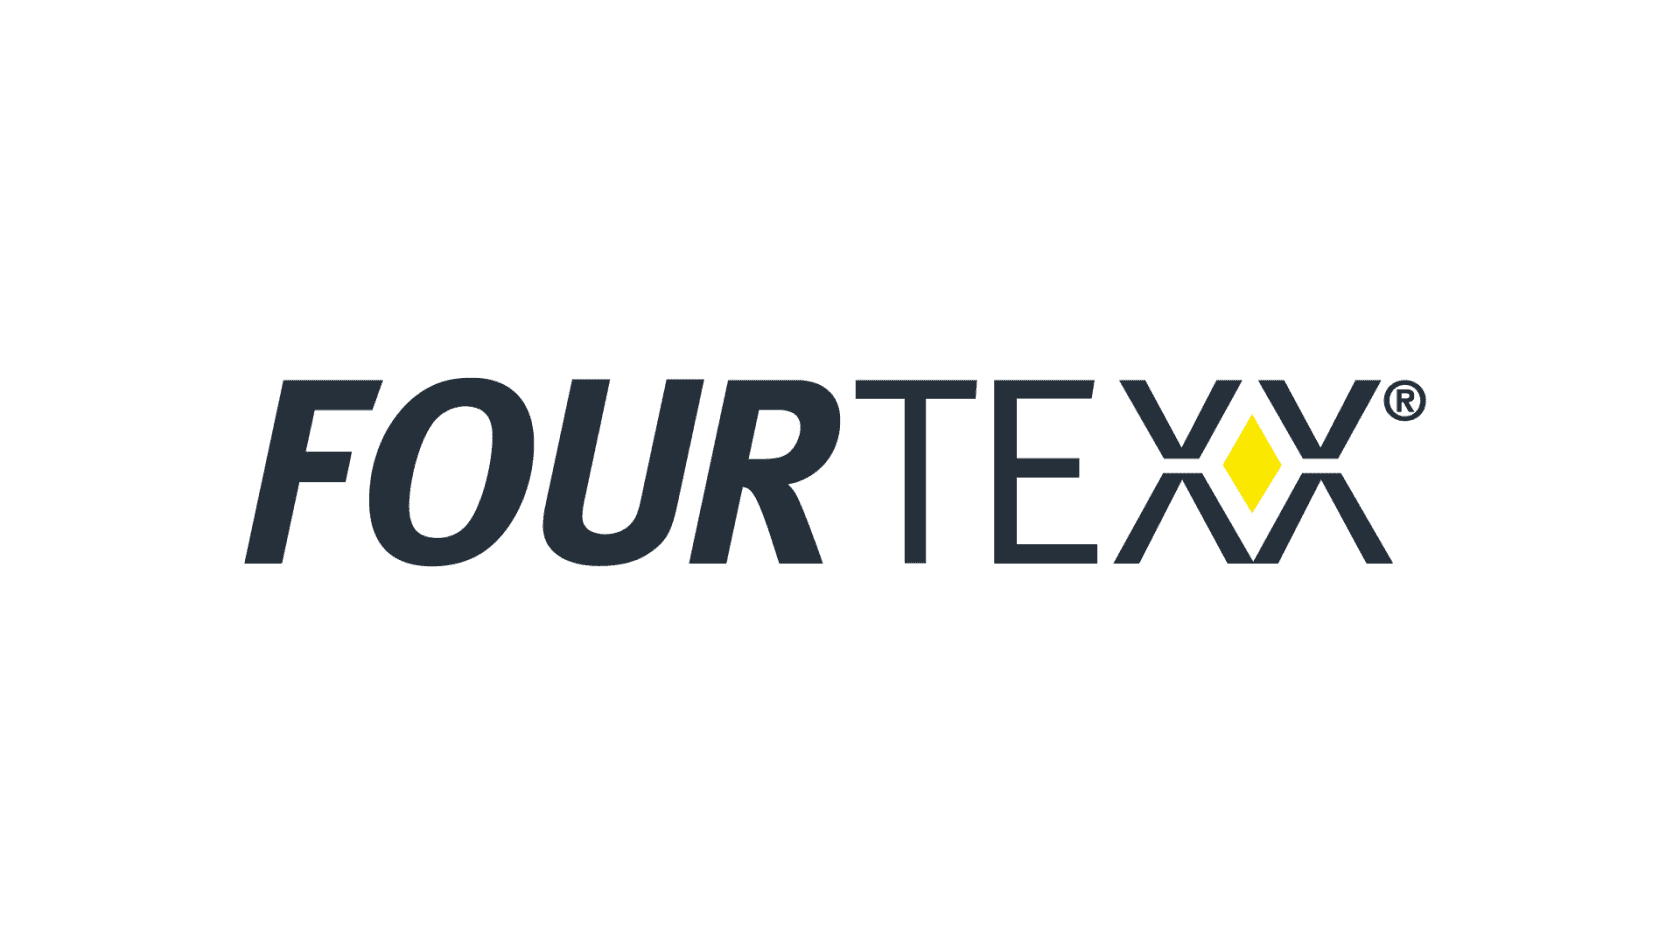 Fourtexx